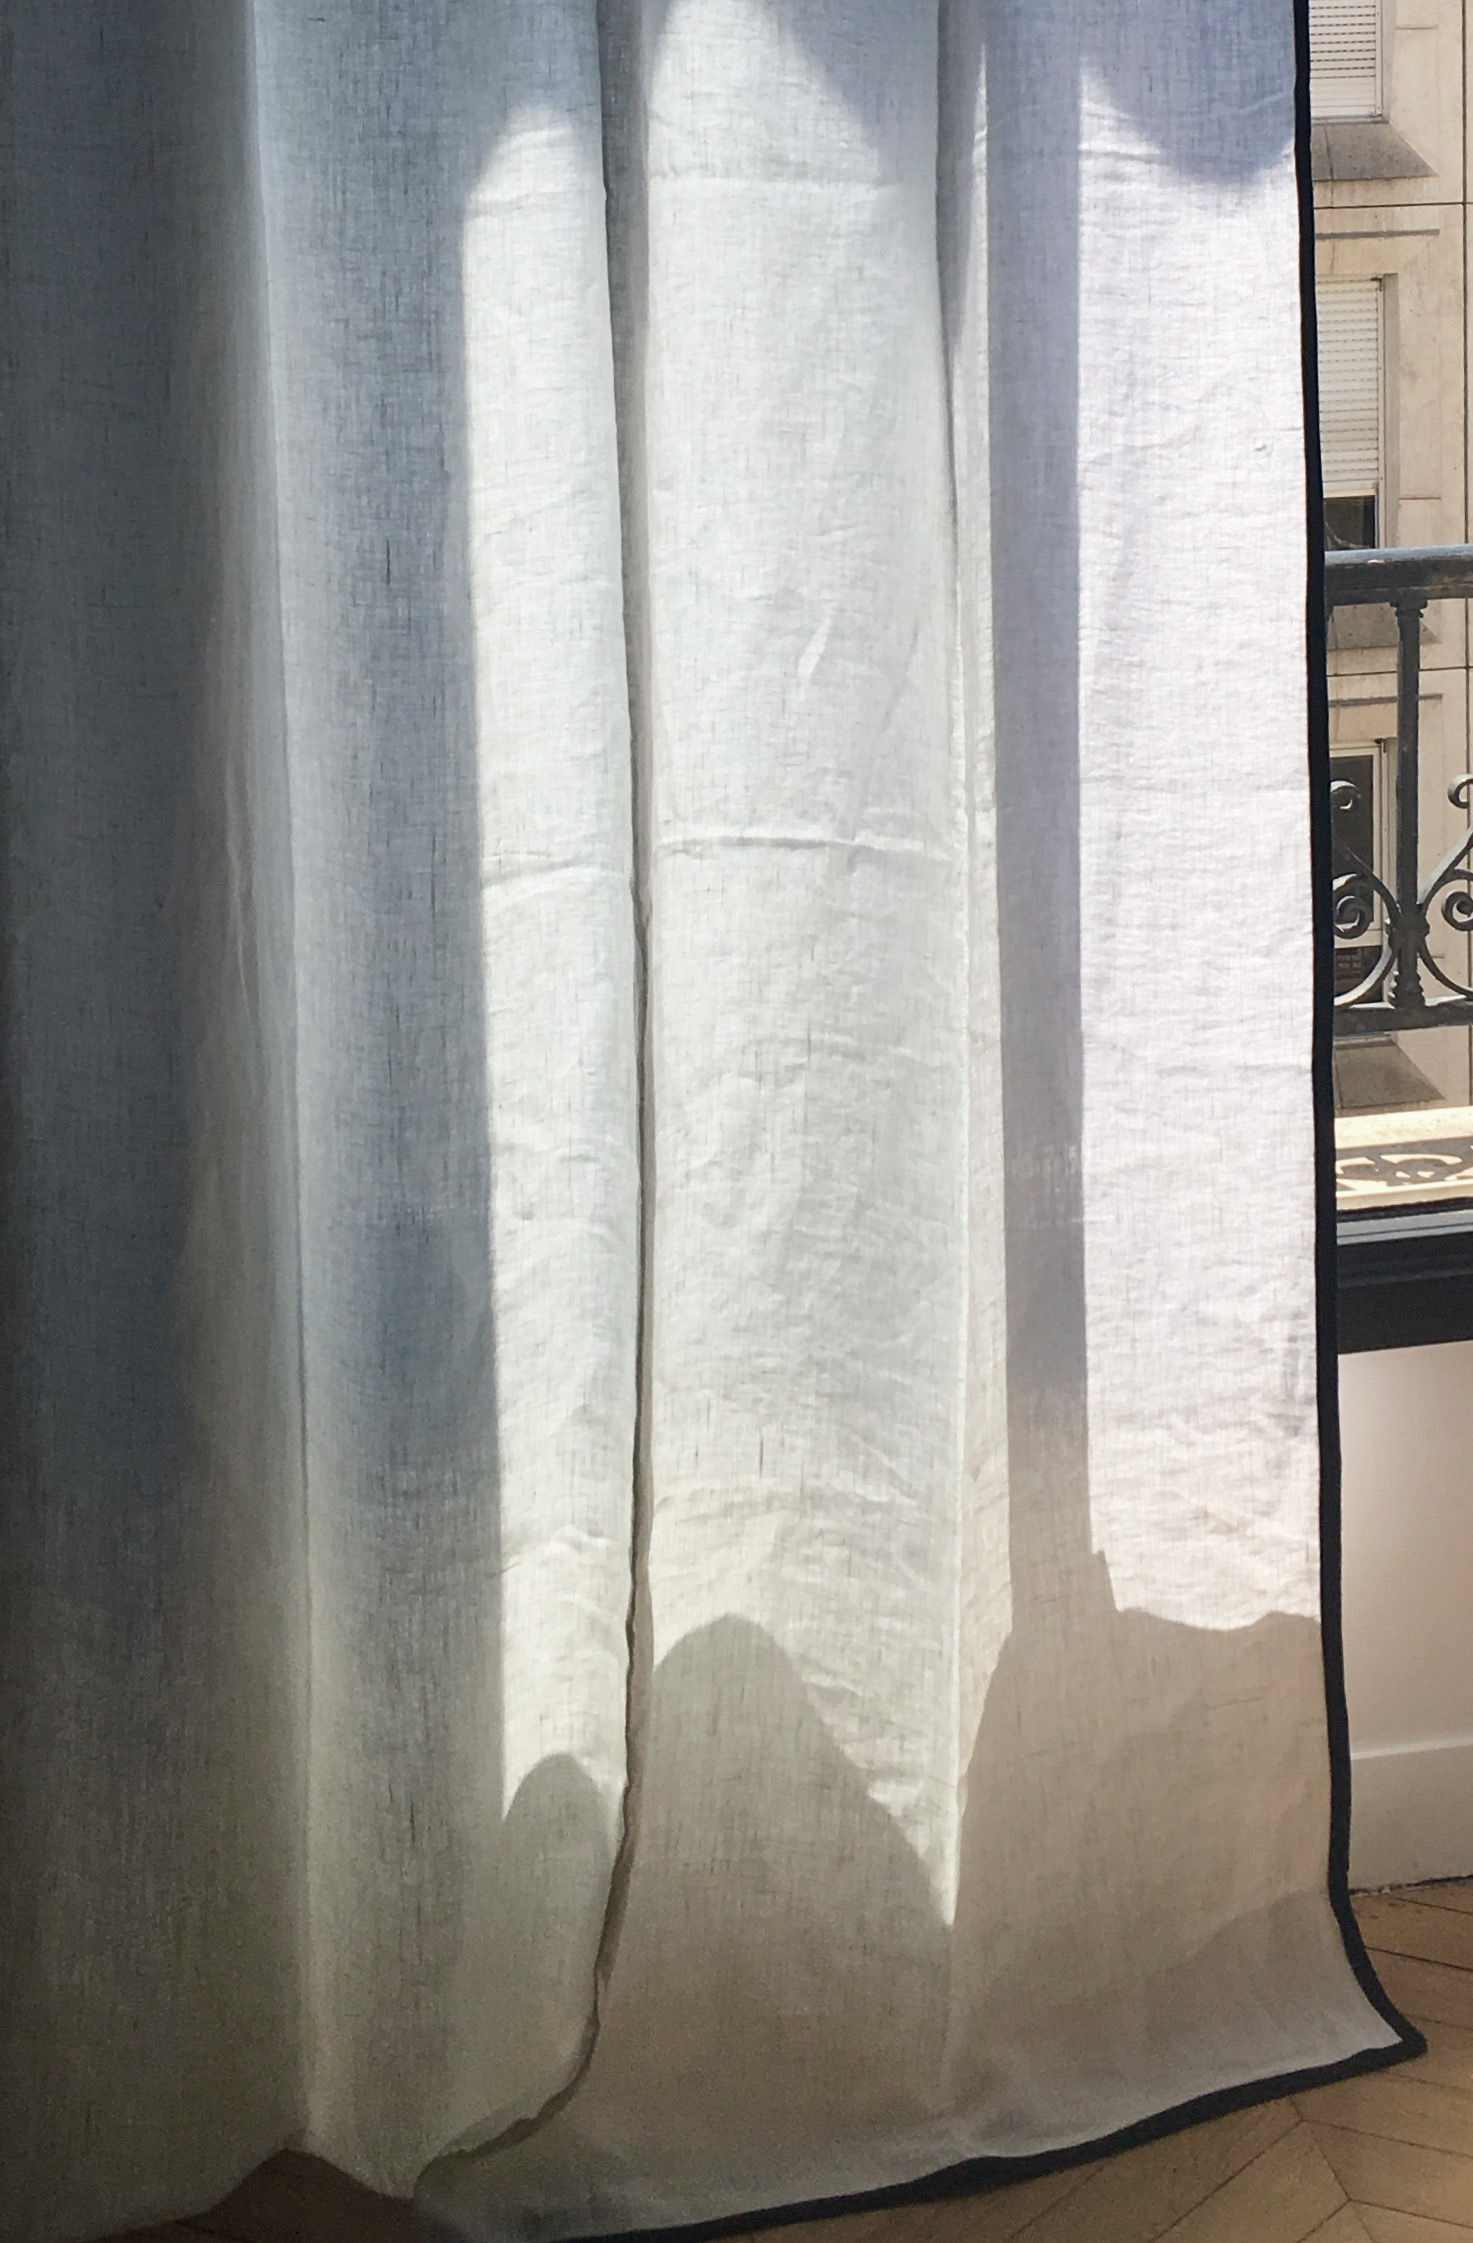 Rideau et voilage blanc pour un intérieur lumineux - Blog Decoboutique